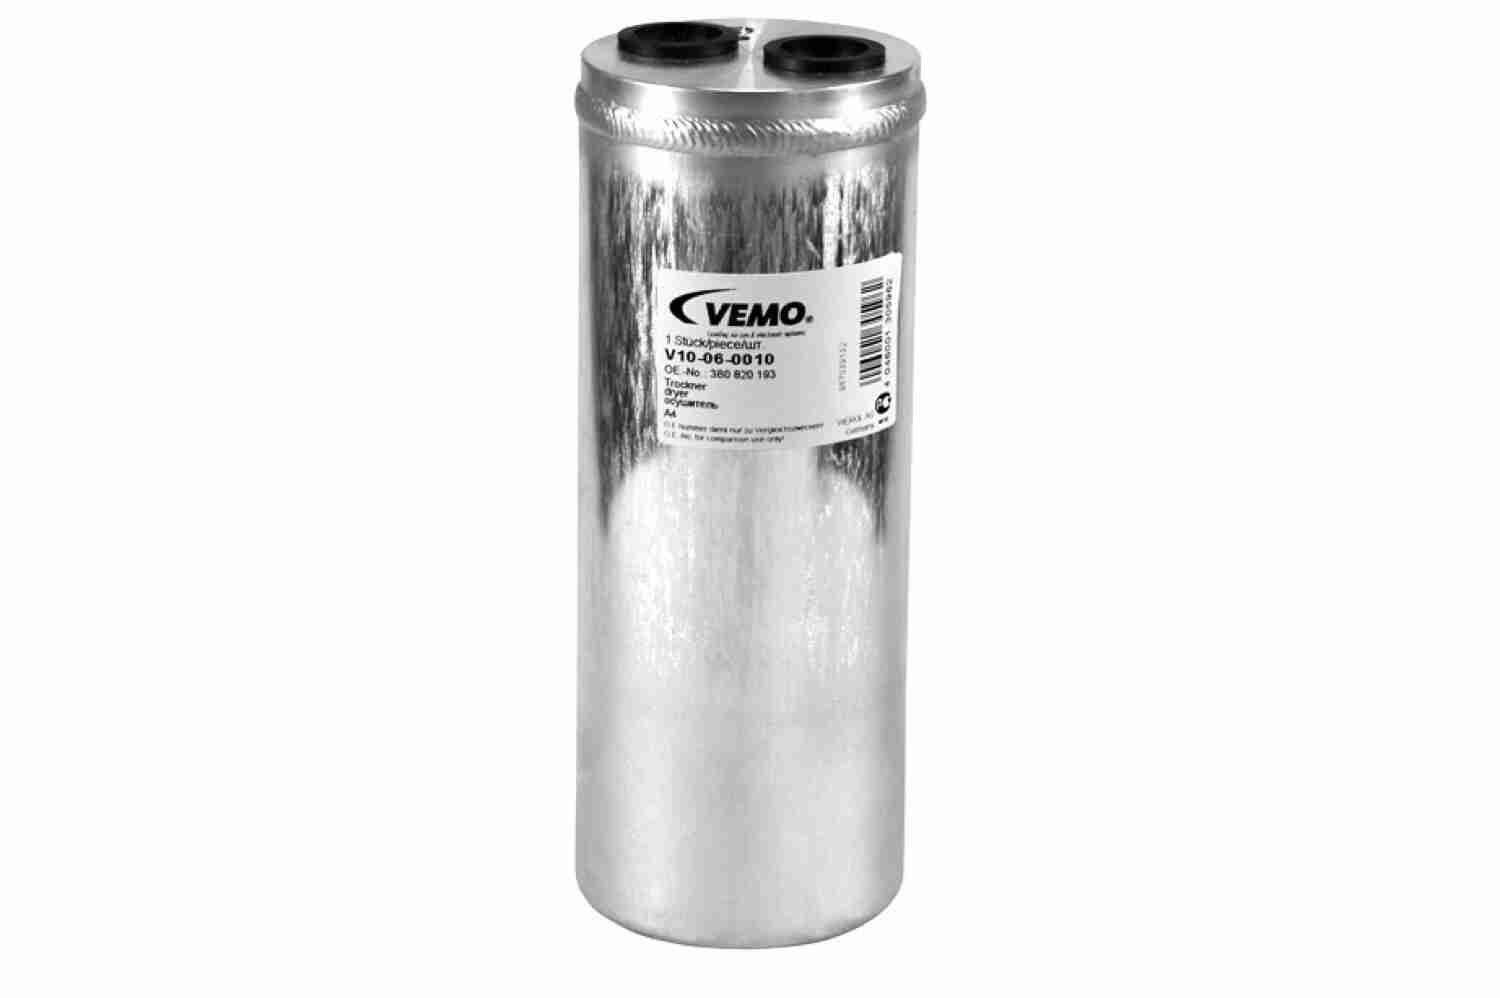 VEMO Original Quality Aluminium Receiver drier V10-06-0010 buy